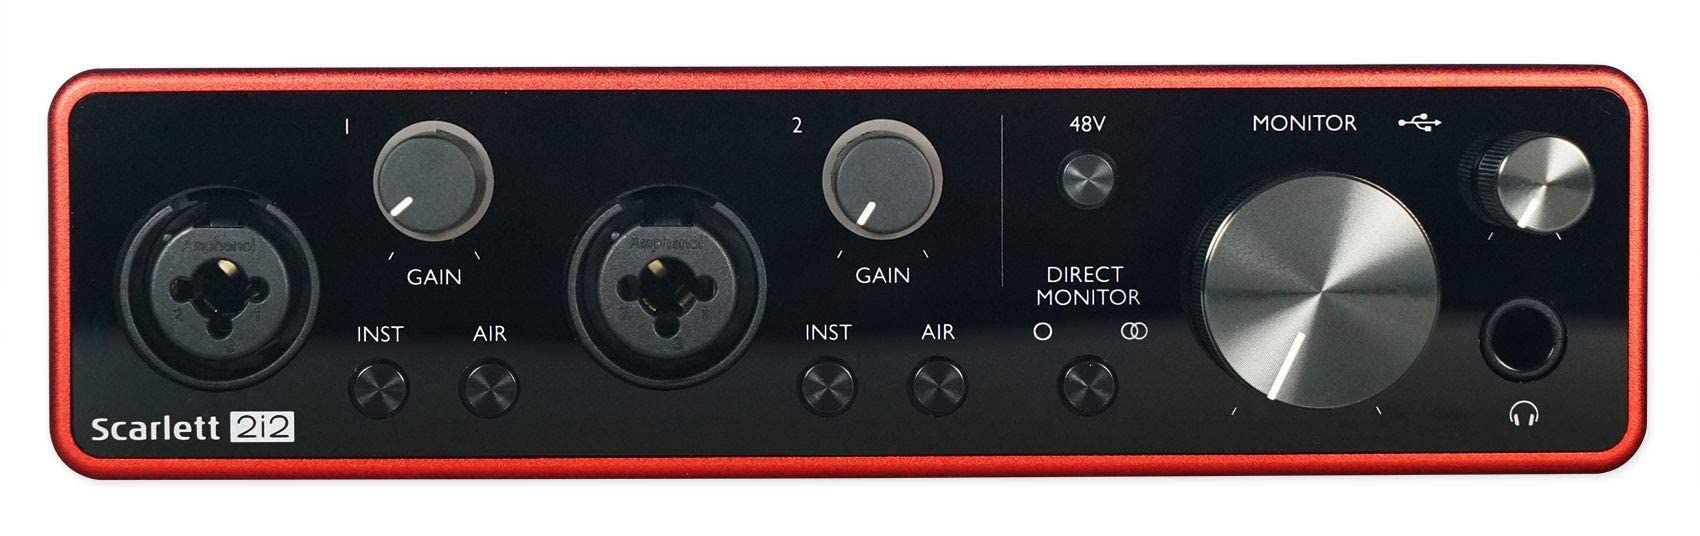 Focusrite Interface de áudio USB SCARLETT 2I2 3ª geração 192KHz com Pro Tools First